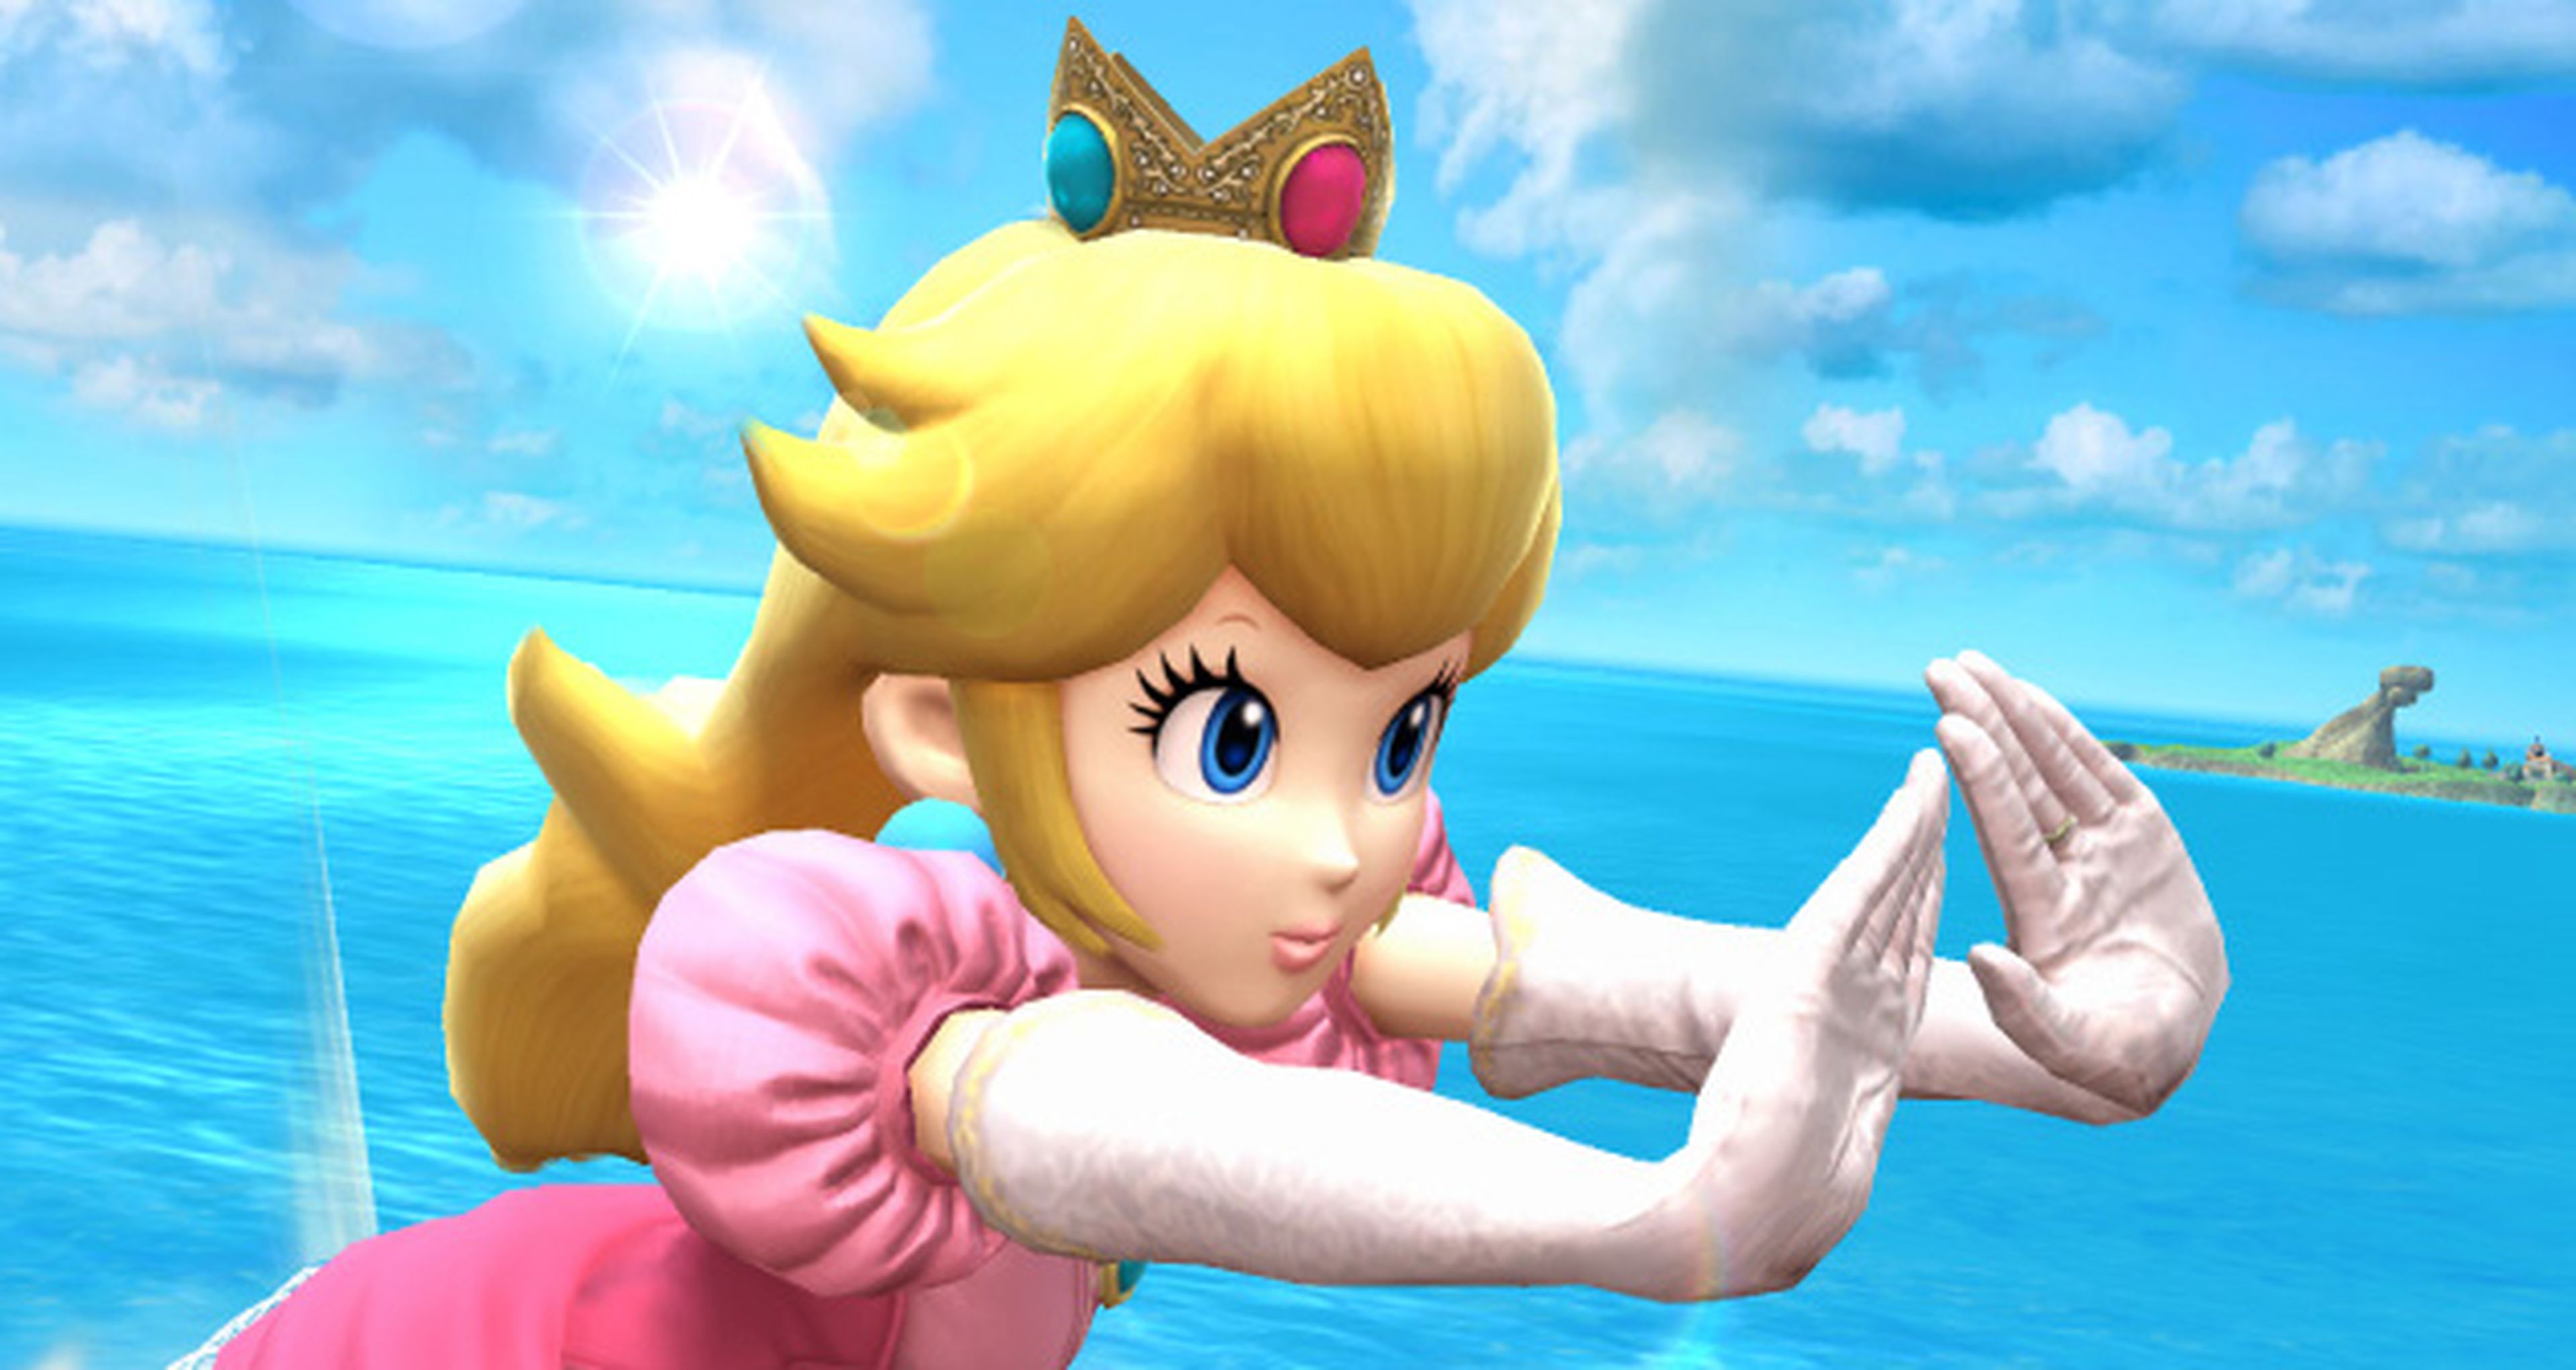 Peach luchará en Super Smash Bros para Wii U y 3DS